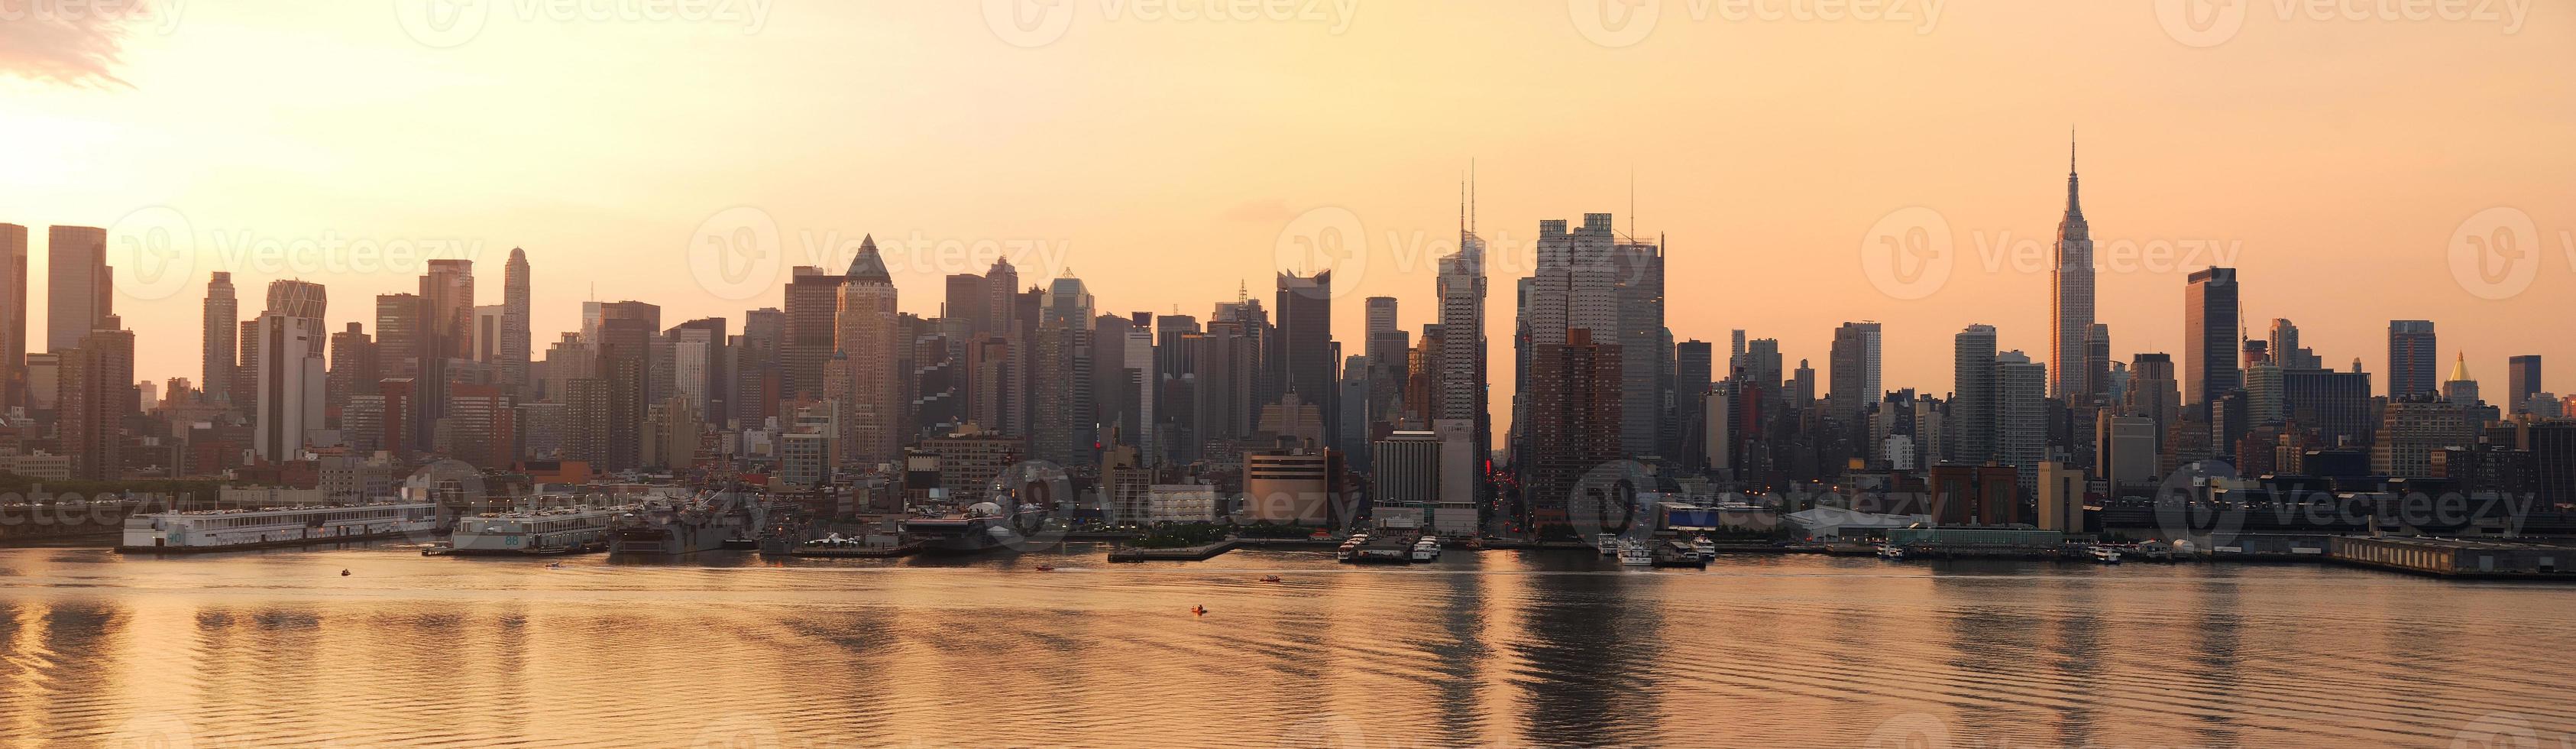 New York City sunrise panorama photo